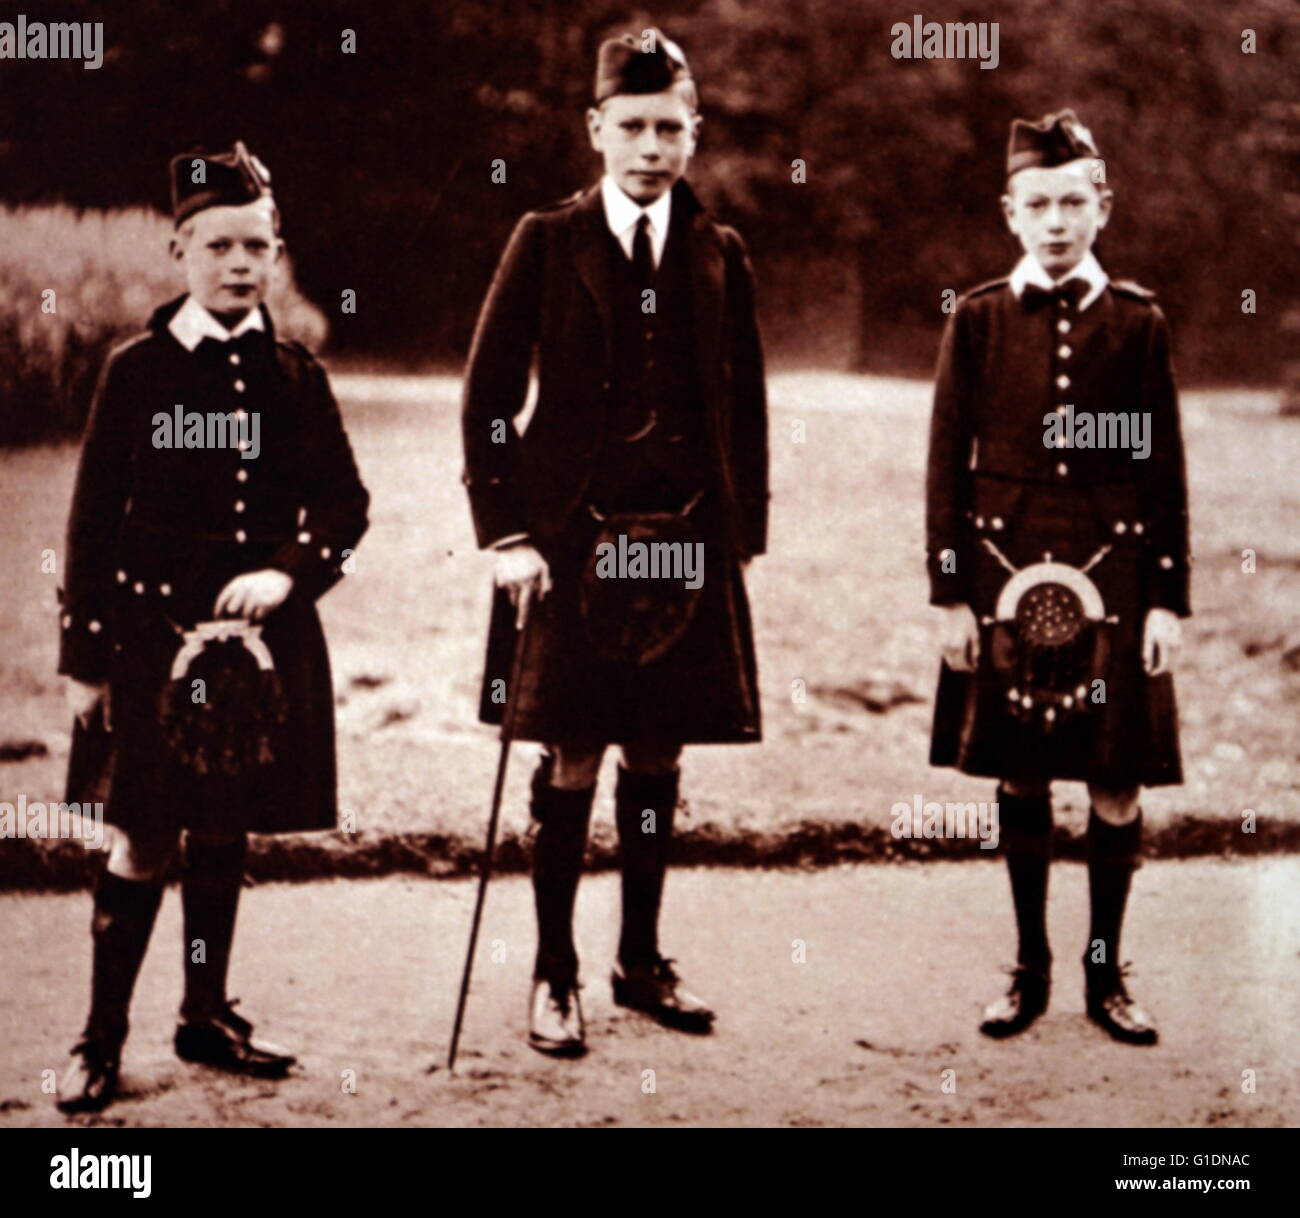 Fotografía de Albert Frederick Arthur George (1895-1952), el Príncipe Henry, Duque de Gloucester (1900-1974) y el Príncipe George, duque de Kent (1902-1942) en el Castillo de Balmoral, en Escocia. Fecha Siglo XX Foto de stock